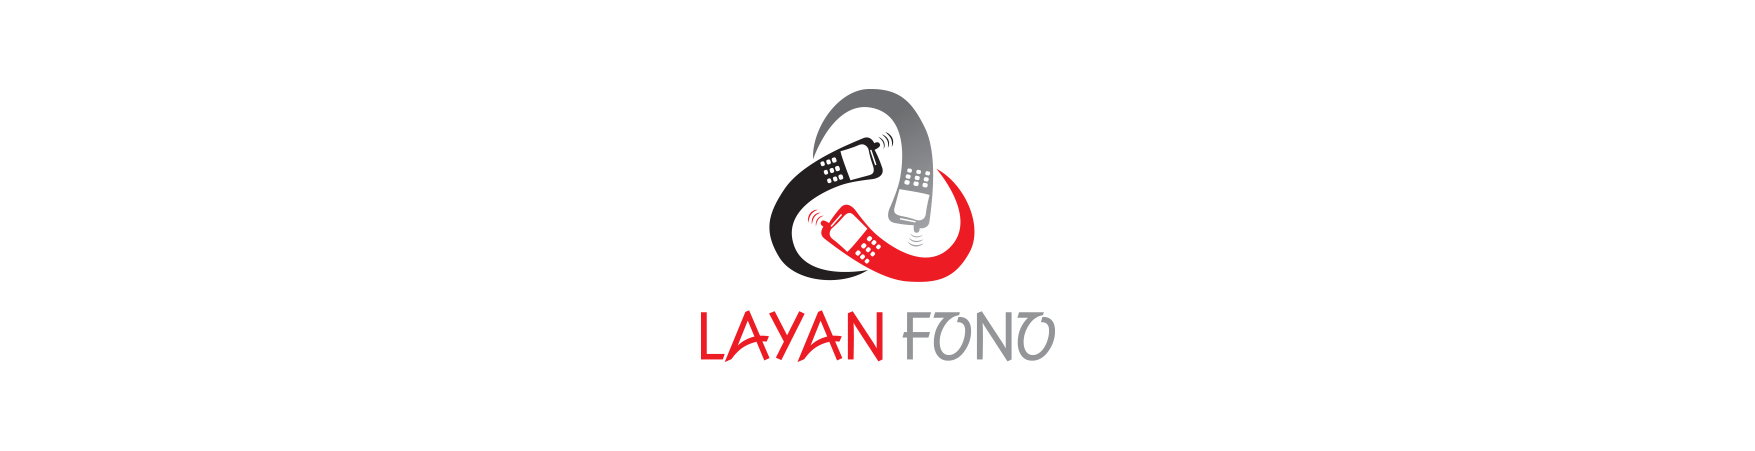 Layan Fono